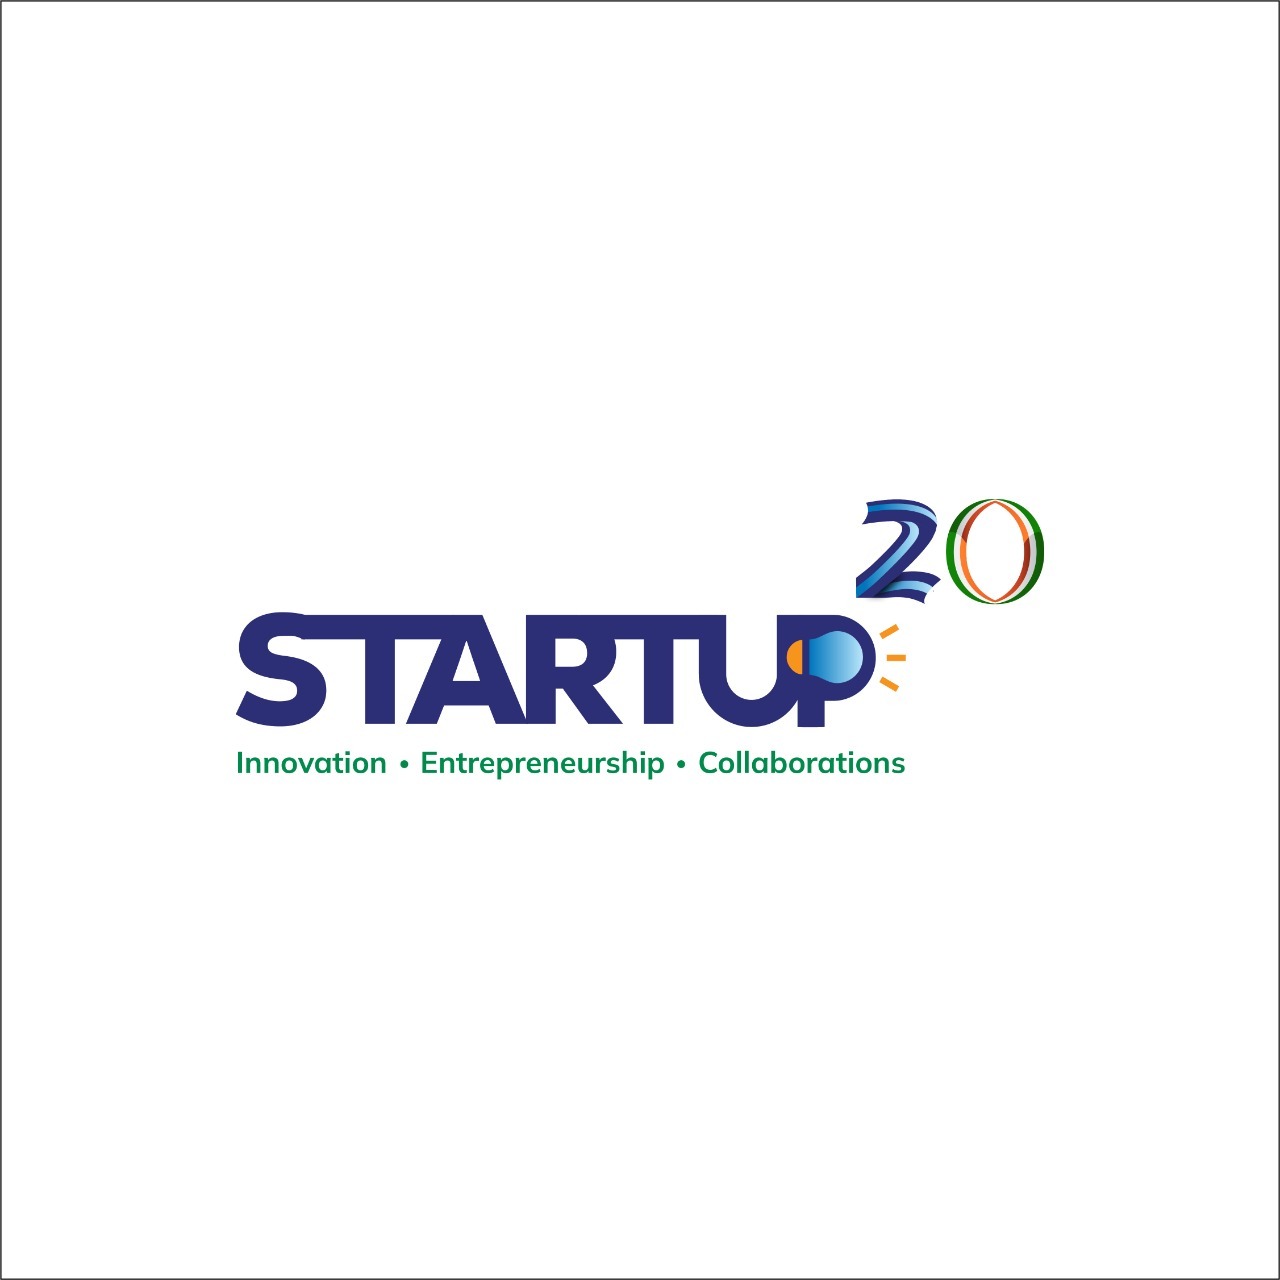 No âmbito da presidência brasileira no G20, serão realizadas três reuniões do Startup20, grupo de engajamento da sociedade civil na temática de startups durante a presidência brasileira do G20, liderado pela Associação Brasileira de Startups (ABStartups). As reuniões pretendem-se espaços de interação entre delegações dos países membros e convidados do G20 com suas startups, investidores, agentes públicos, fundadores e demais agentes de ecossistemas de inovação.